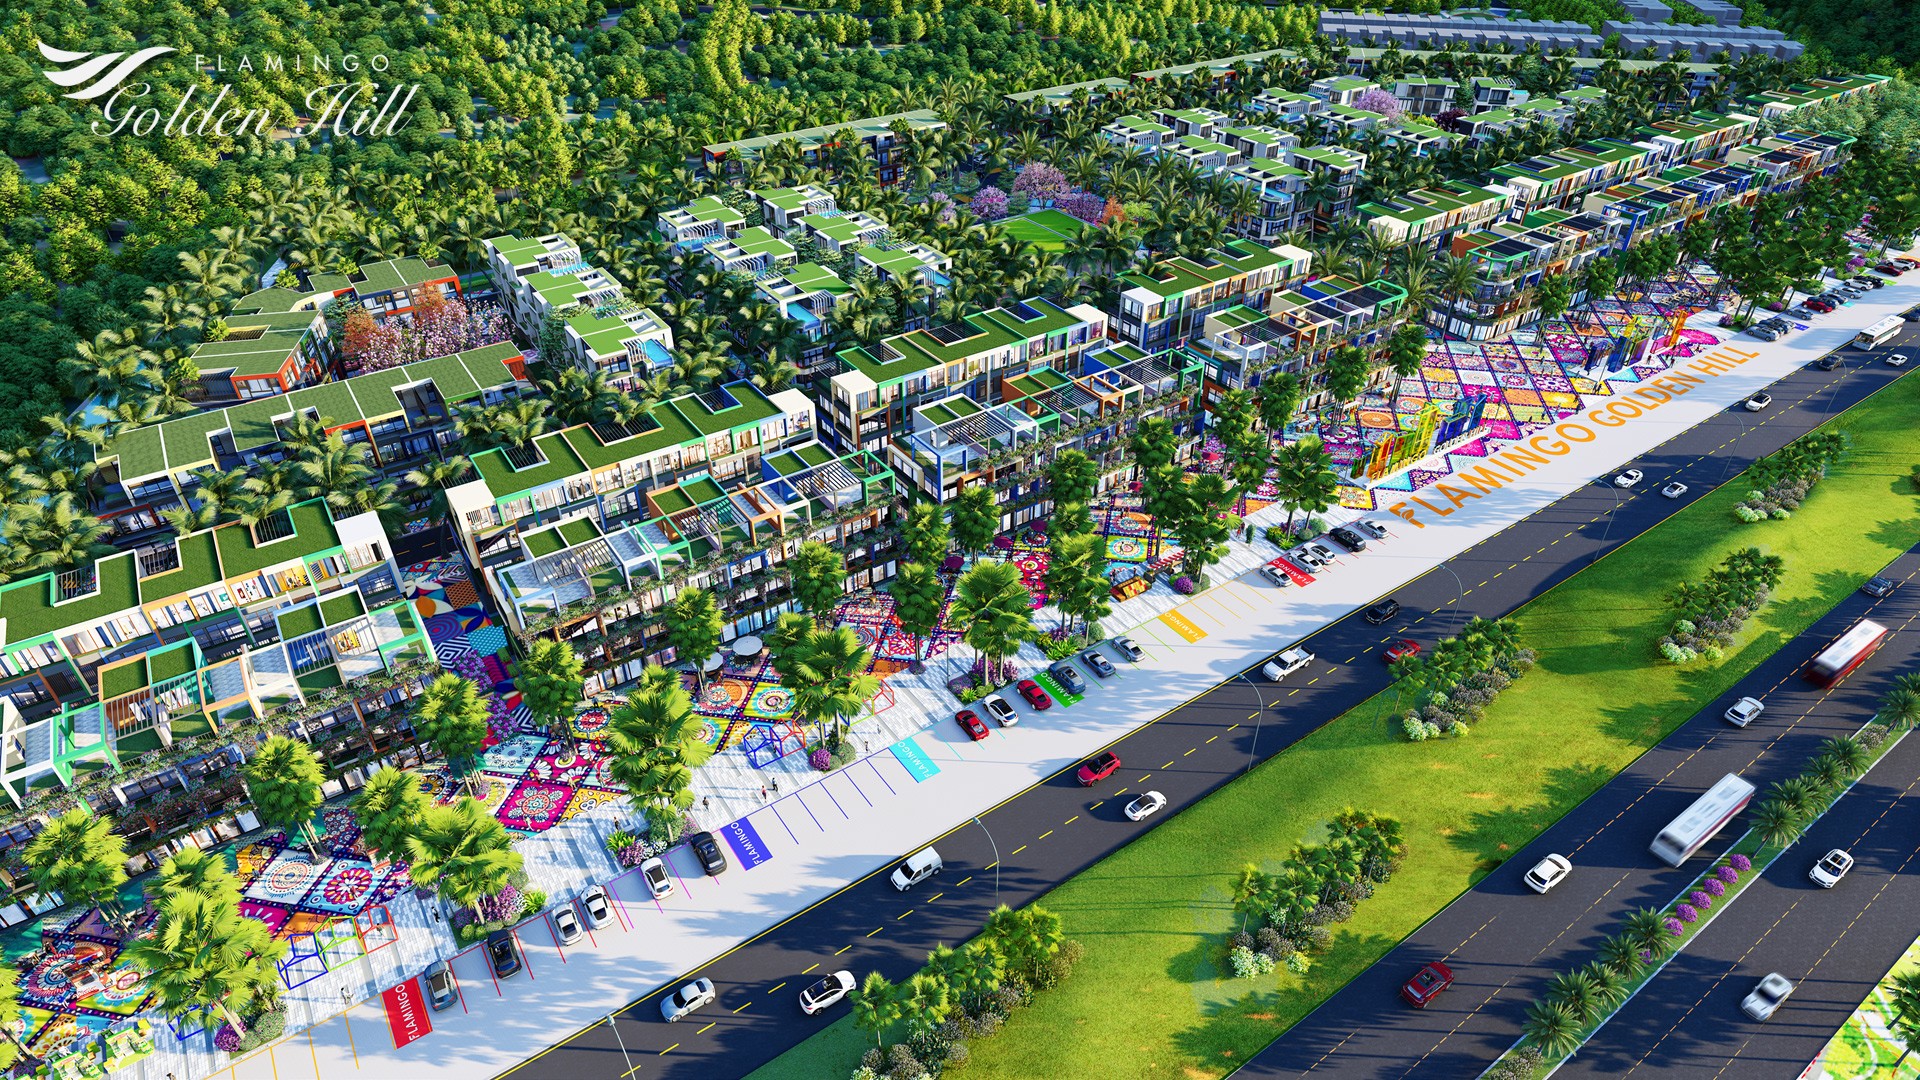 Biệt thự thương mại tại Thành phố Flamingo Golden Hill mang đến sự an tâm đầu tư tuyệt đối